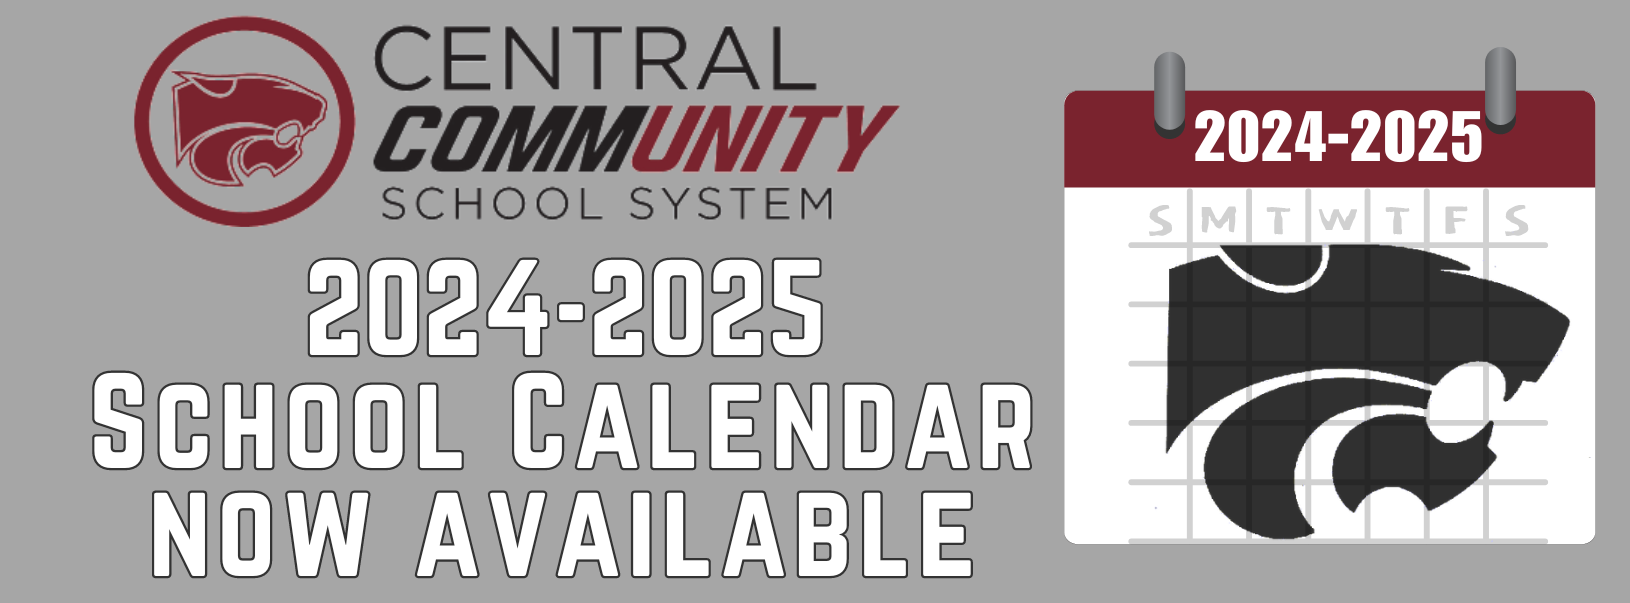 2024-2025 School Calendar now available